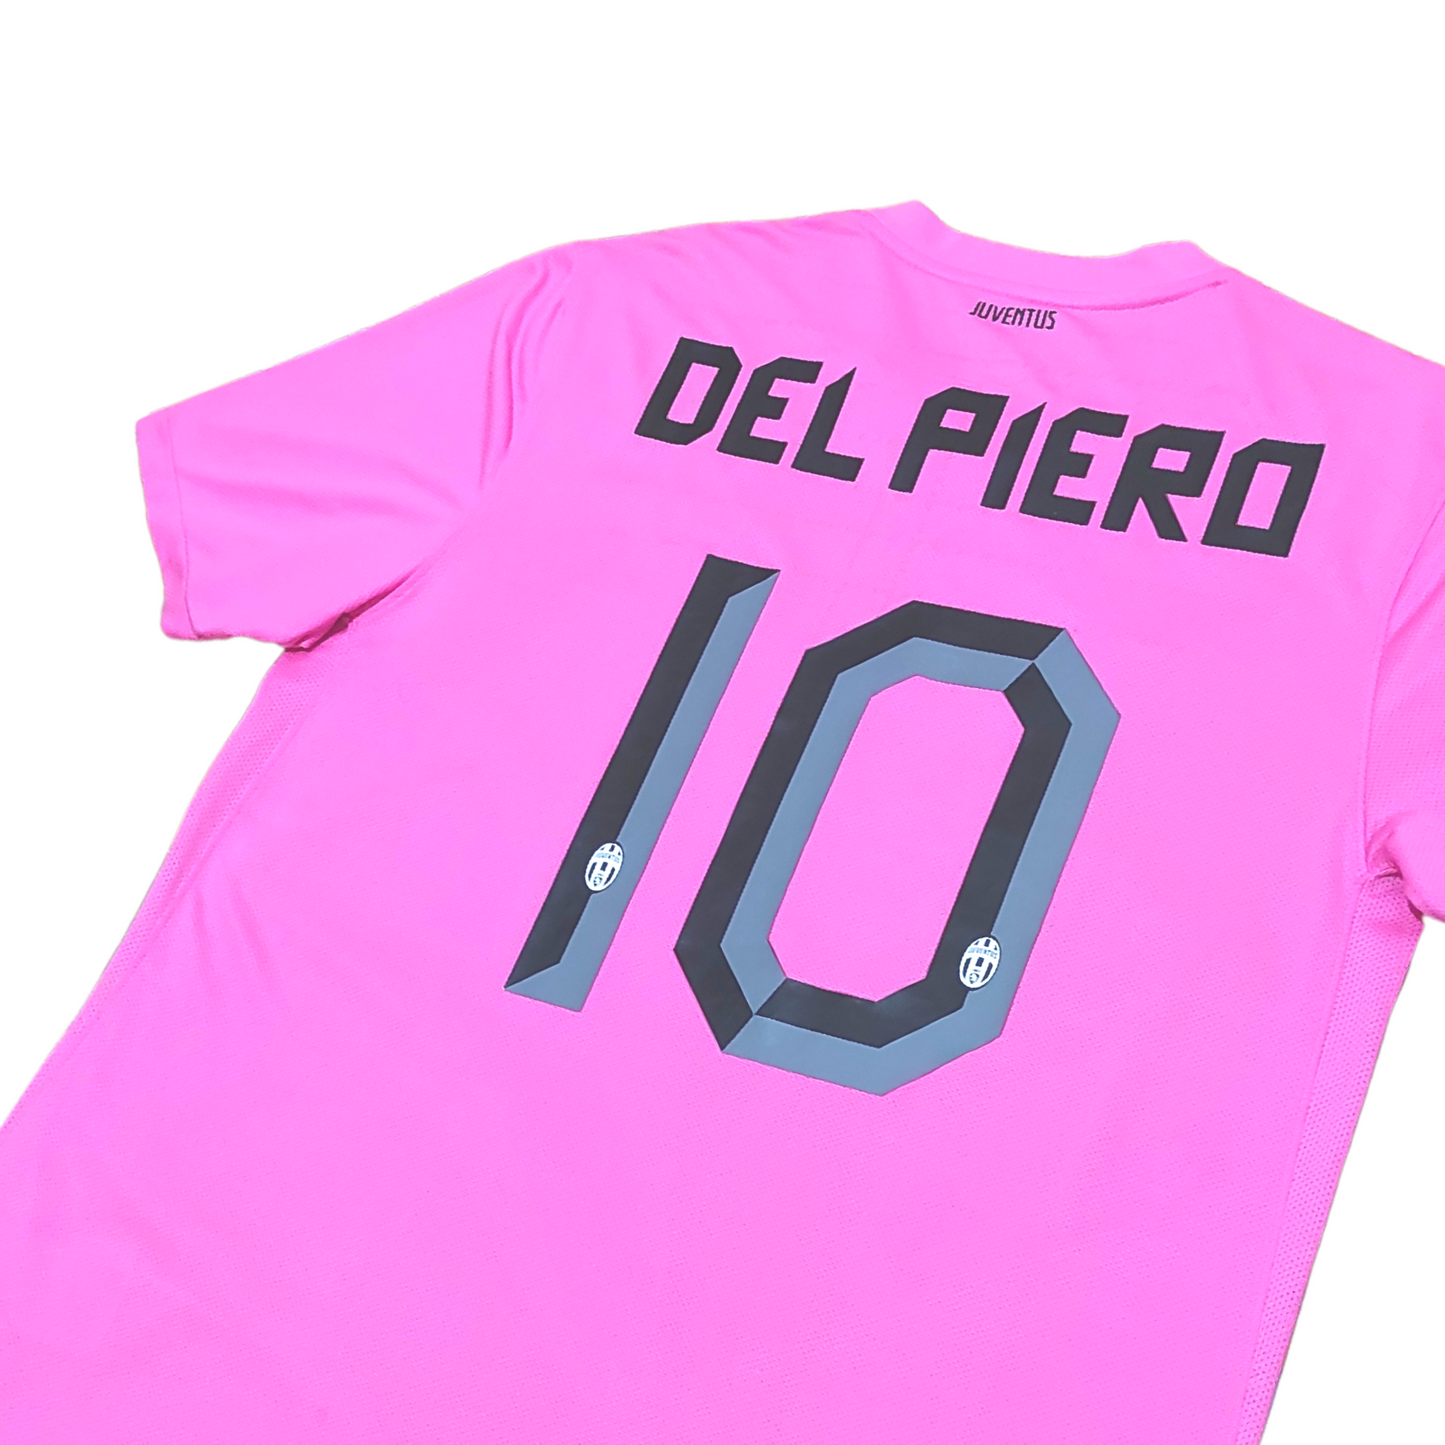 Juventus Away Shirt 2011-2012 Delpiero (M)